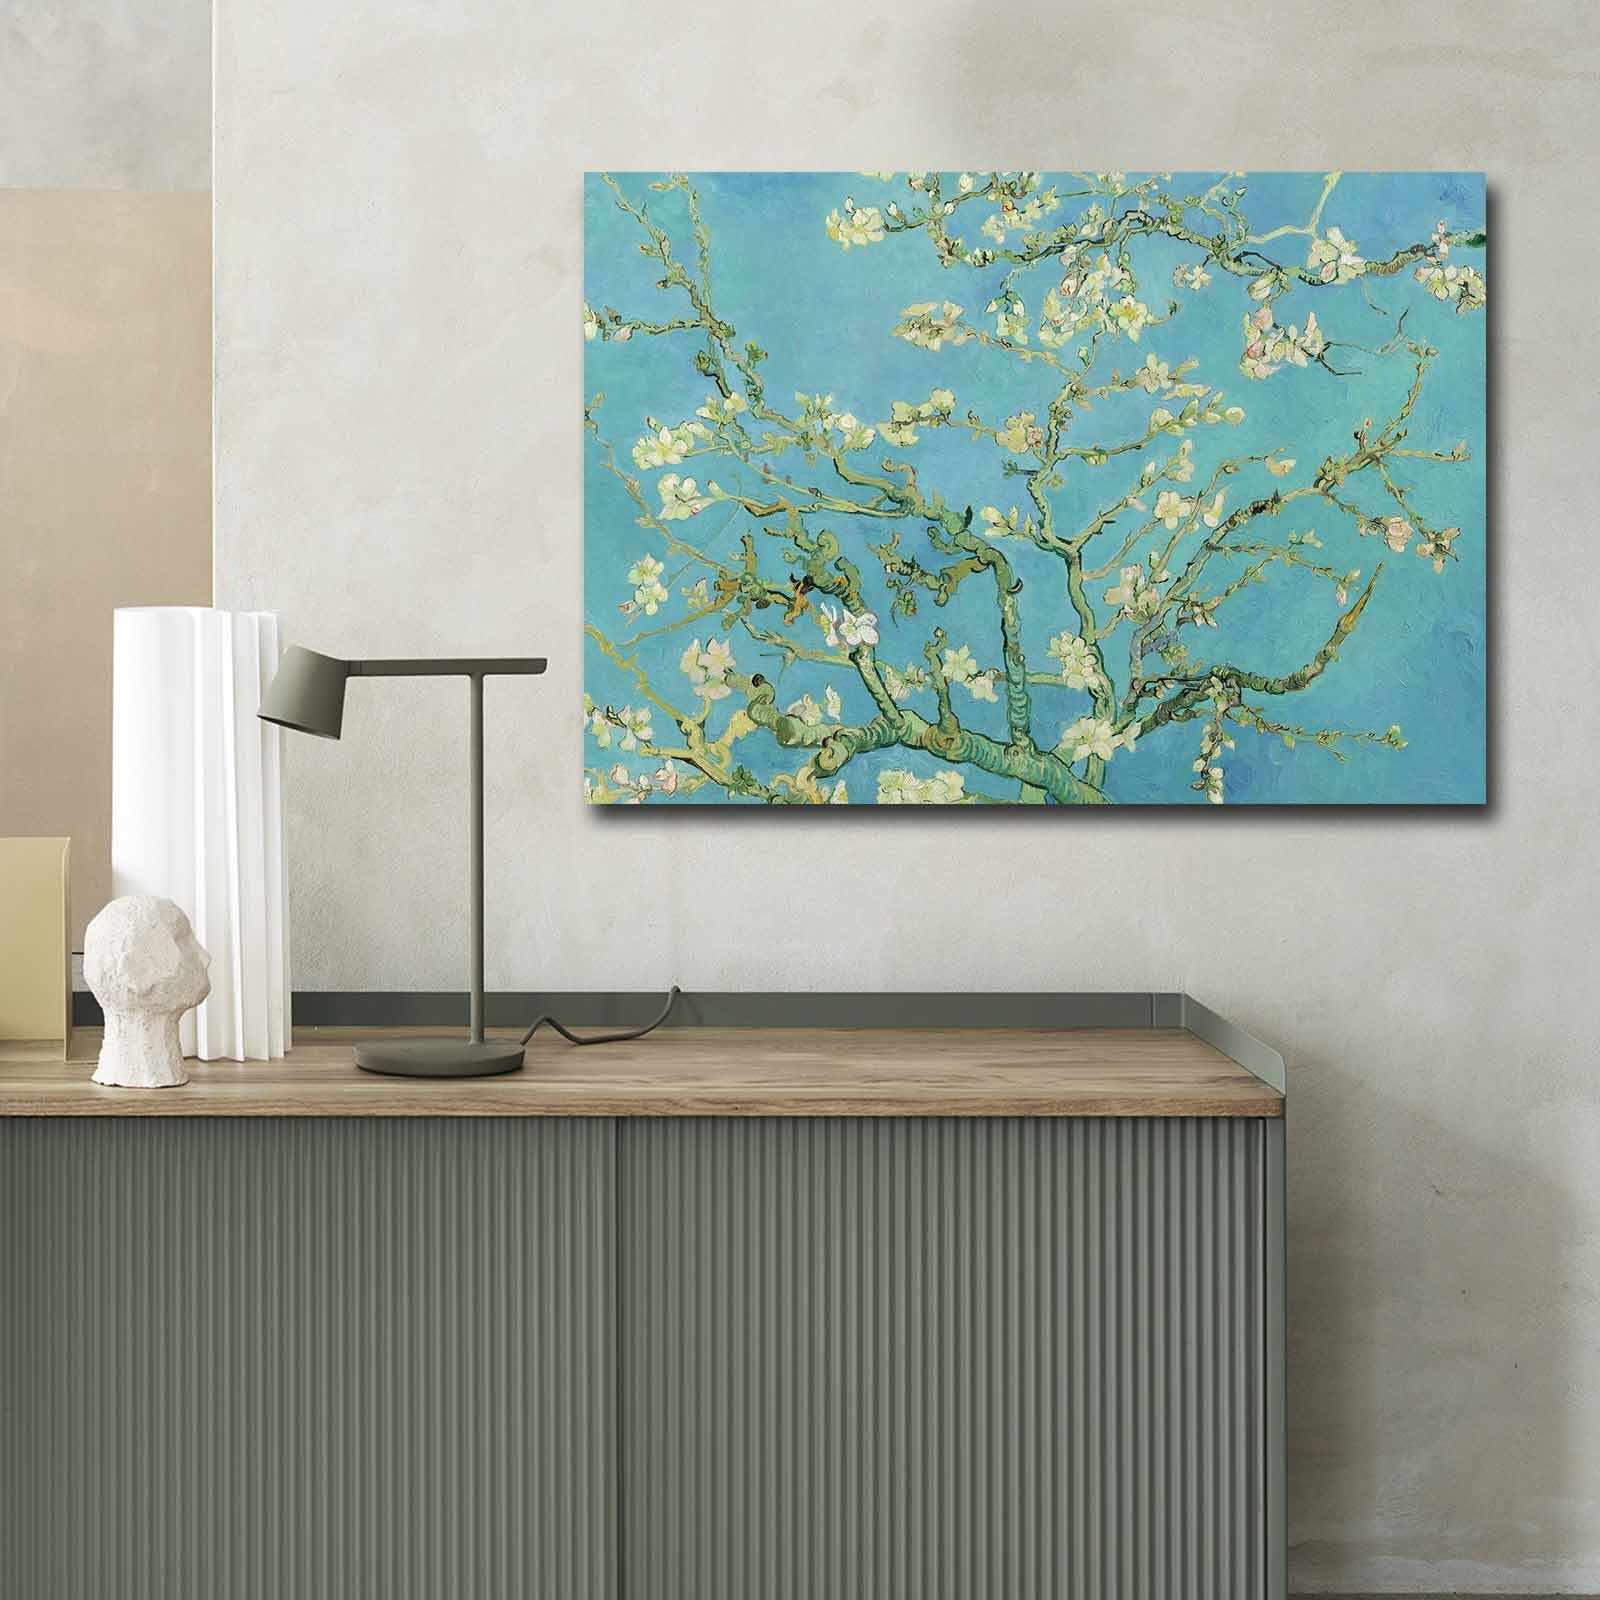 Tablou Canvas Cherry Blossoms 70100FAMOUSART-053 Multicolor, 100 x 70 cm